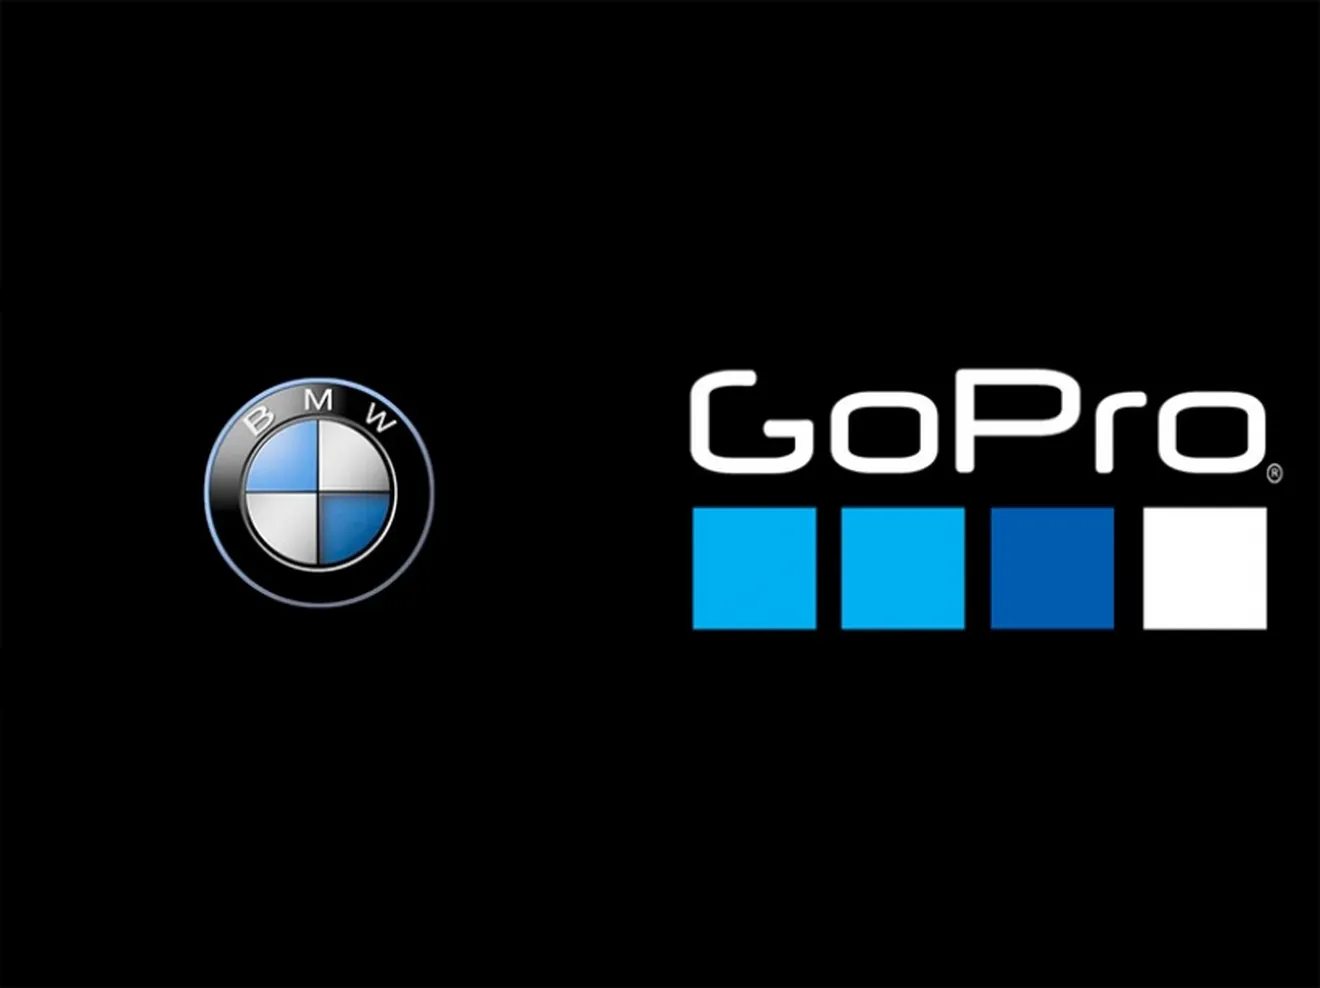 BMW incluirá cámaras GoPro en el sistema de infoentretenimiento de sus coches